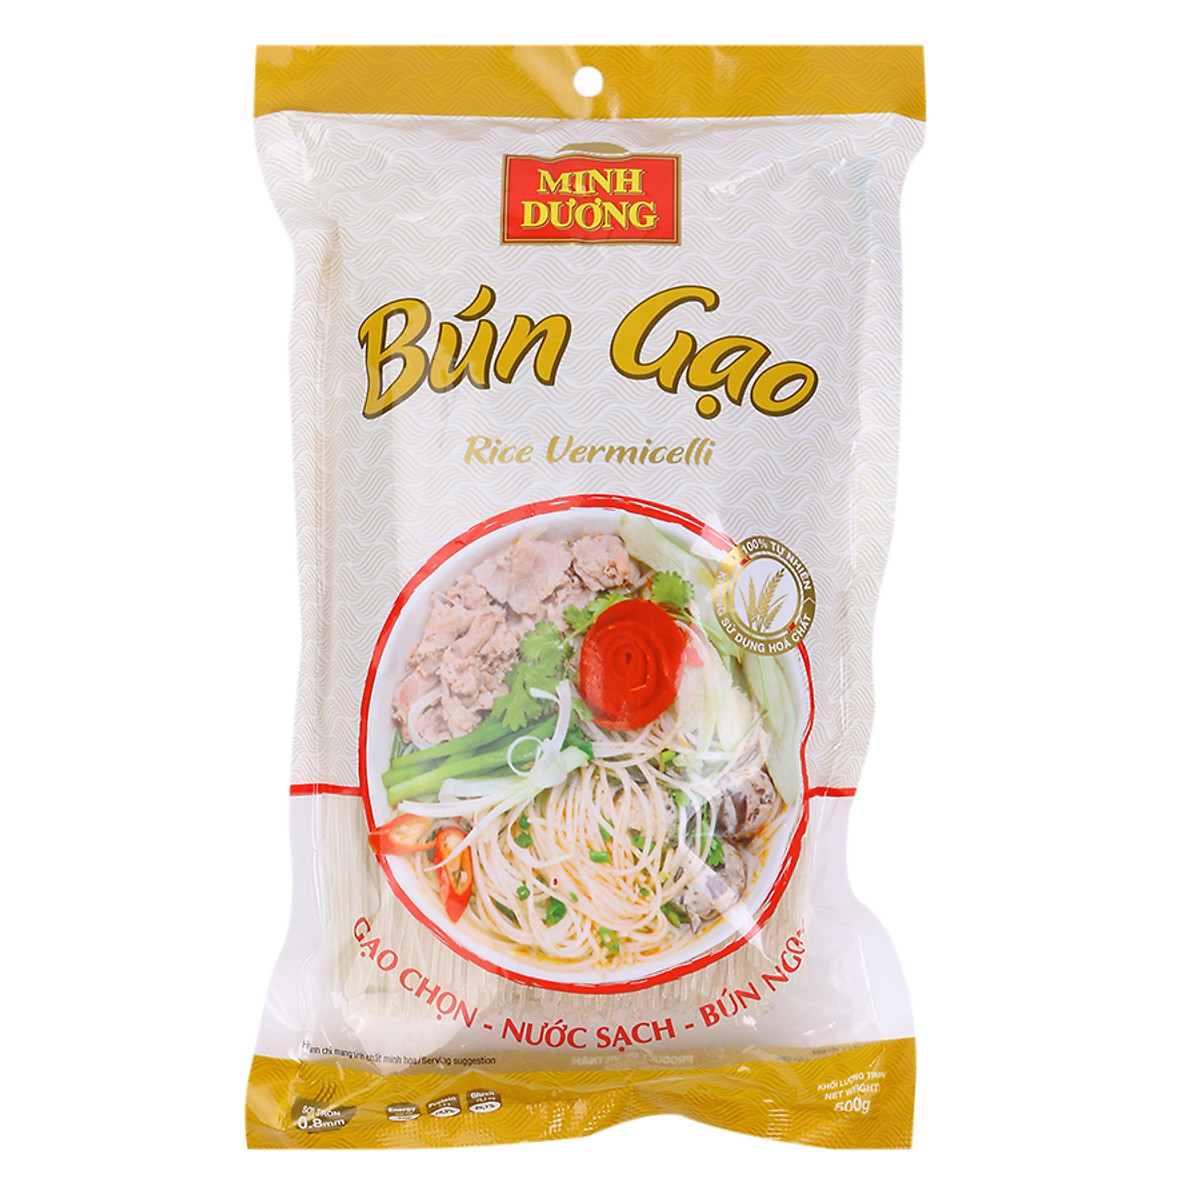 Bún gạo Minh Duong 500g